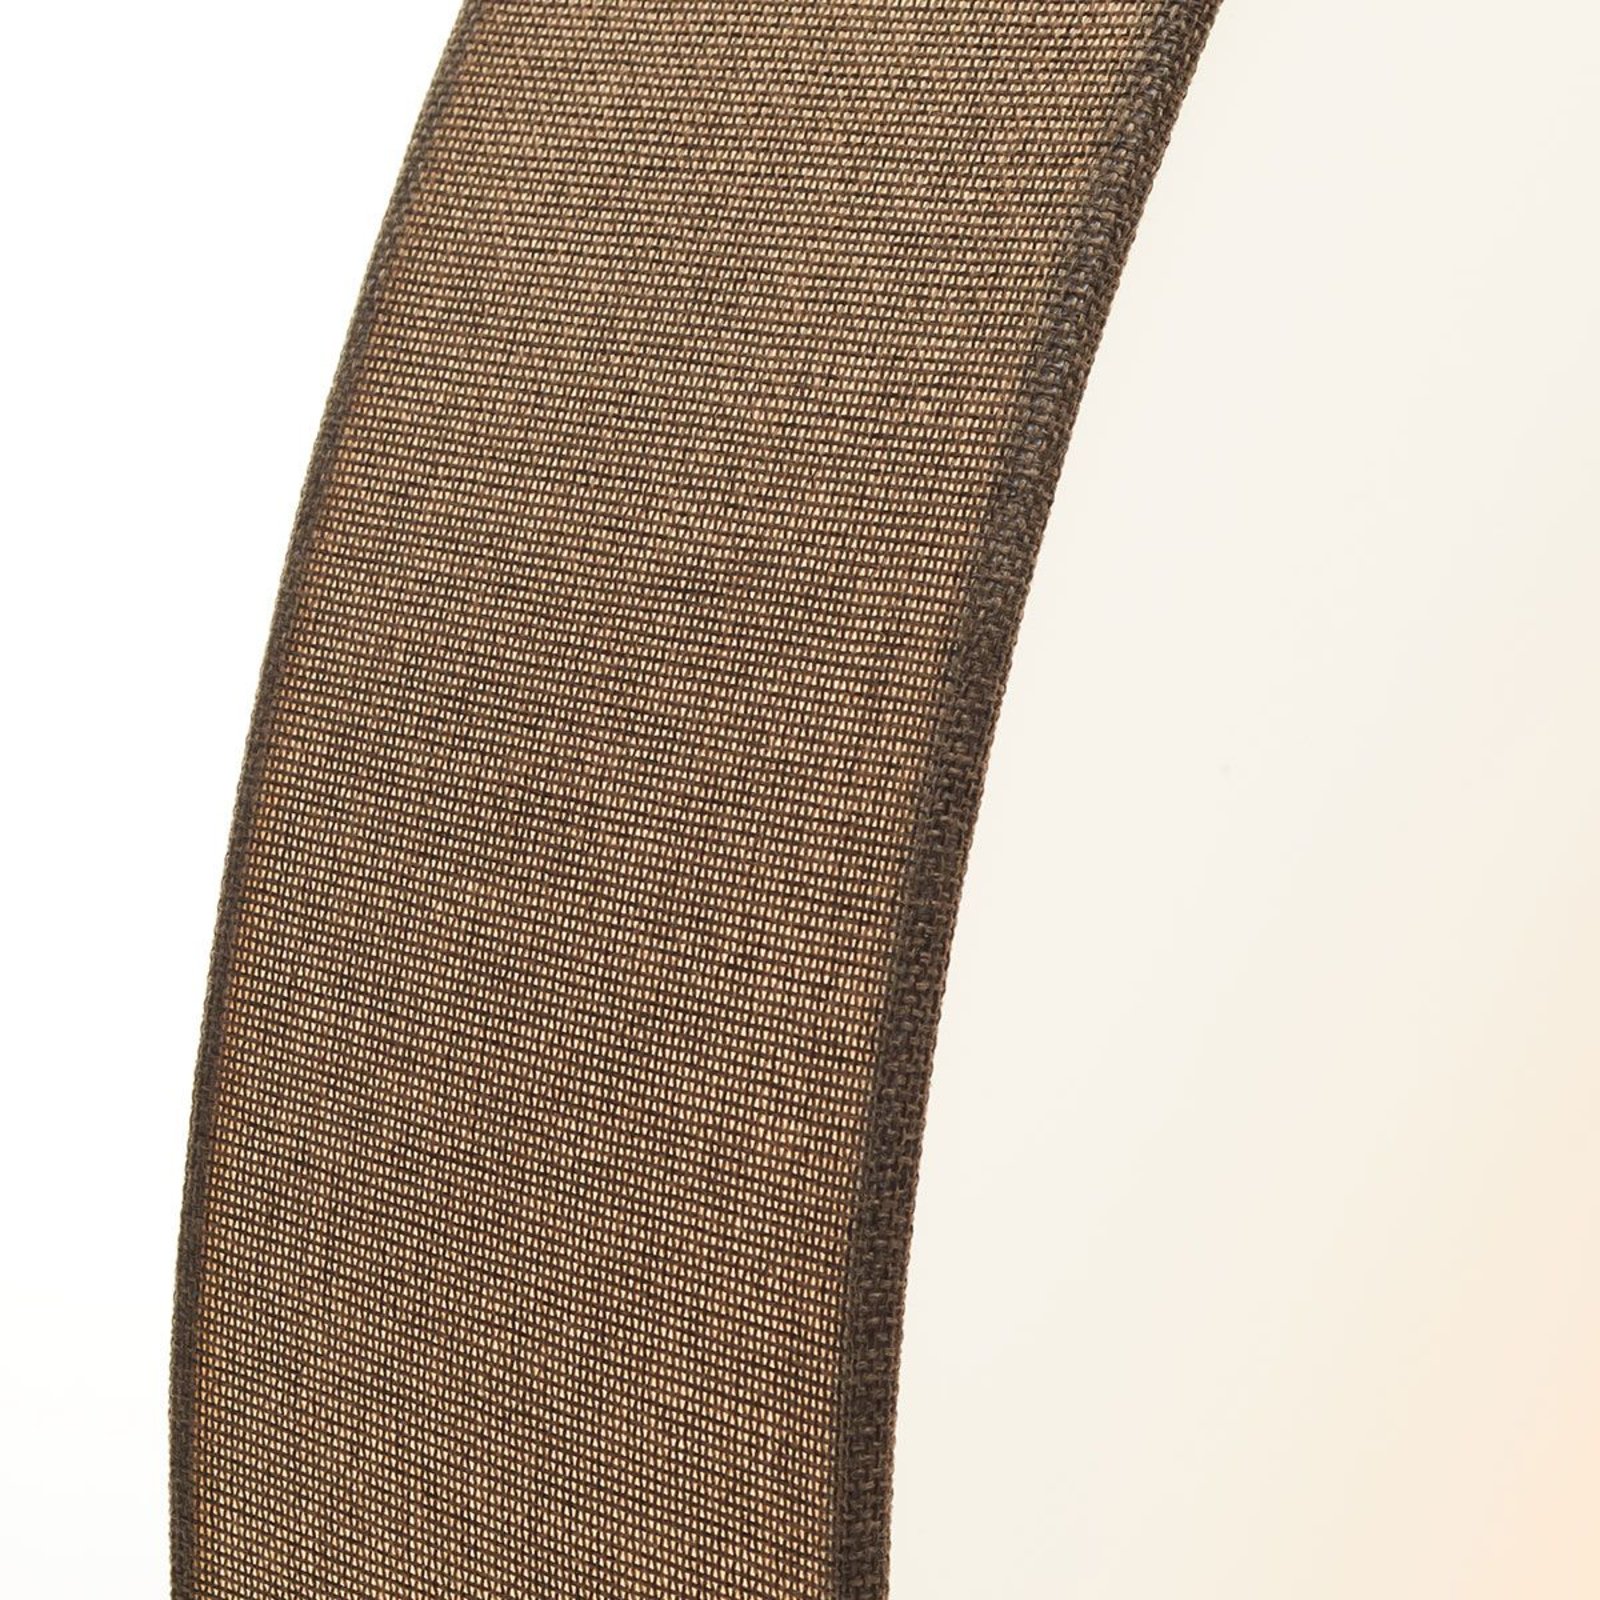 Brązowa, tkaninowa lampa sufitowa Pasteri, 76 cm